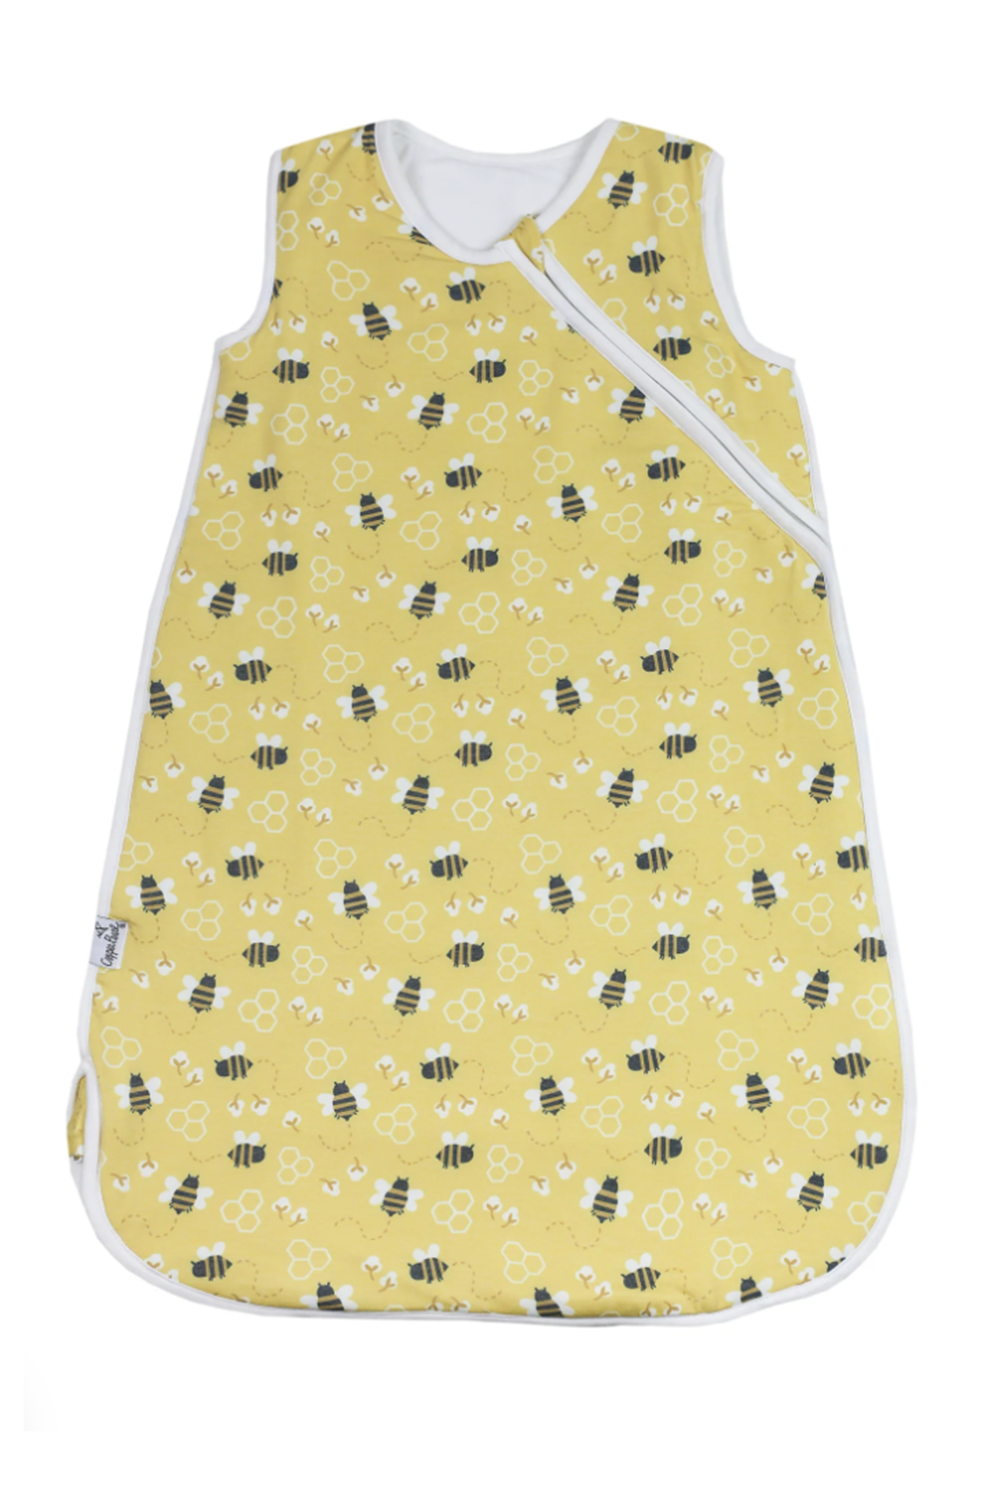 Sleep Bag - Honeycomb